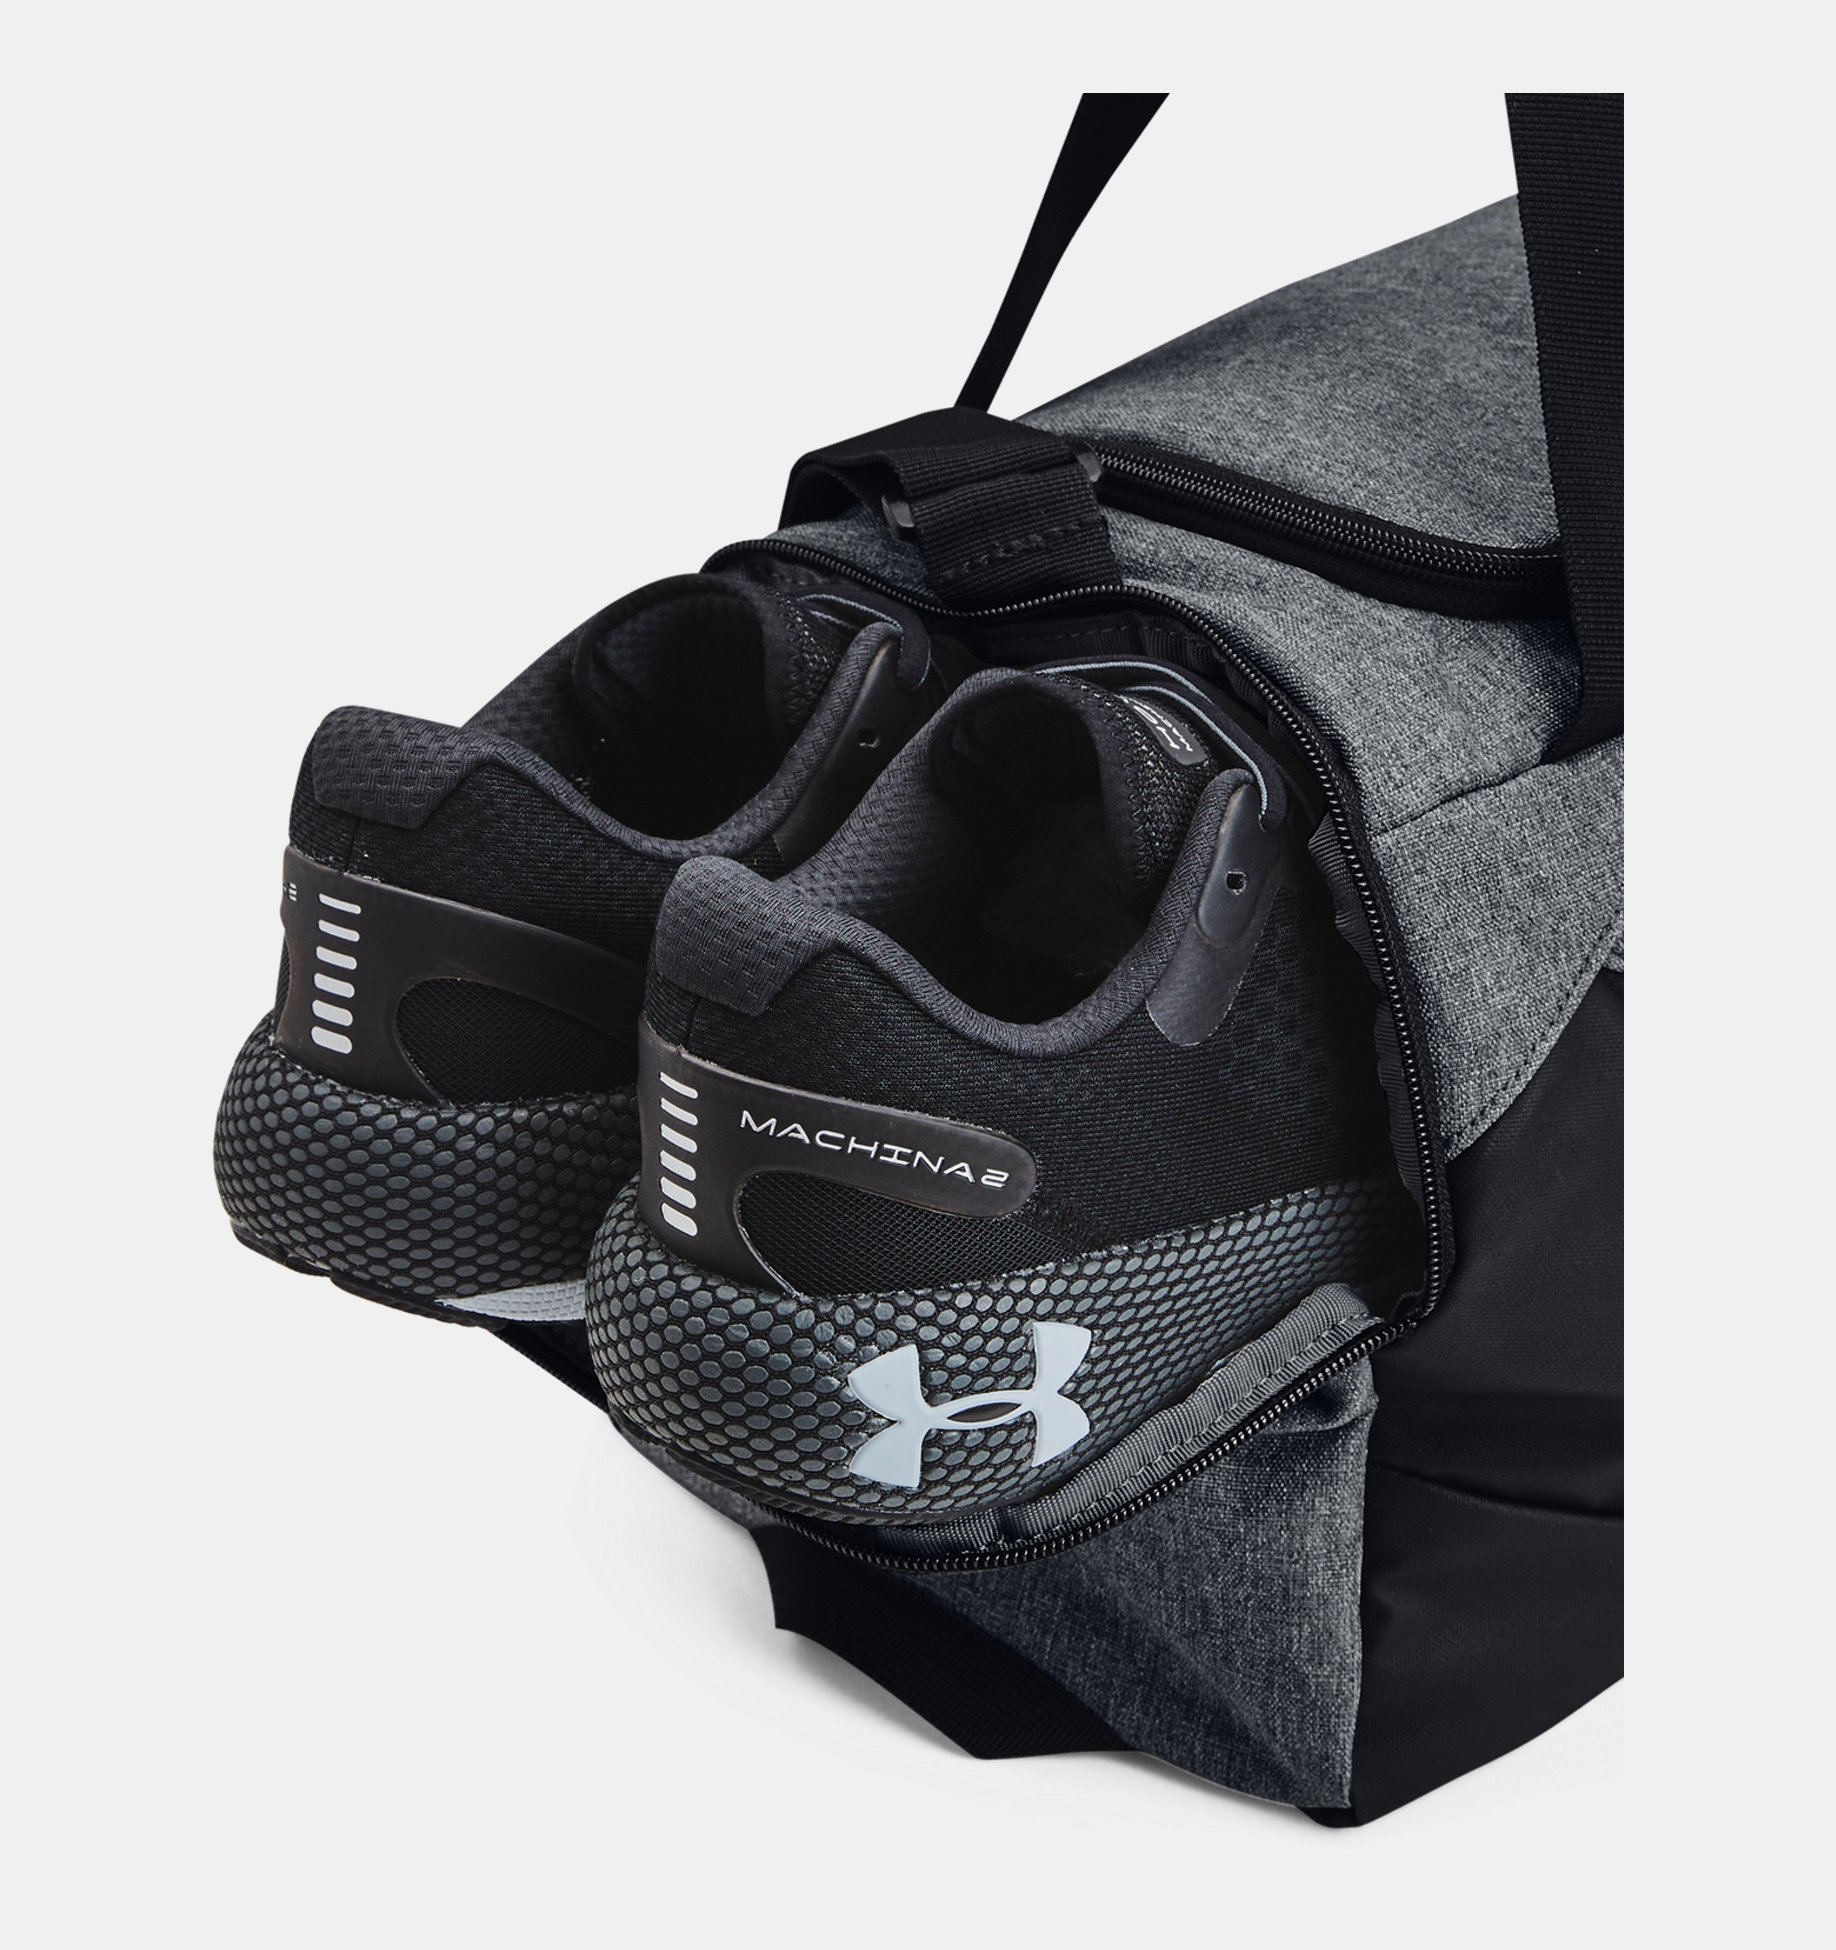 언더아머 Underarmour UA Undeniable 5.0 XS Duffle Bag